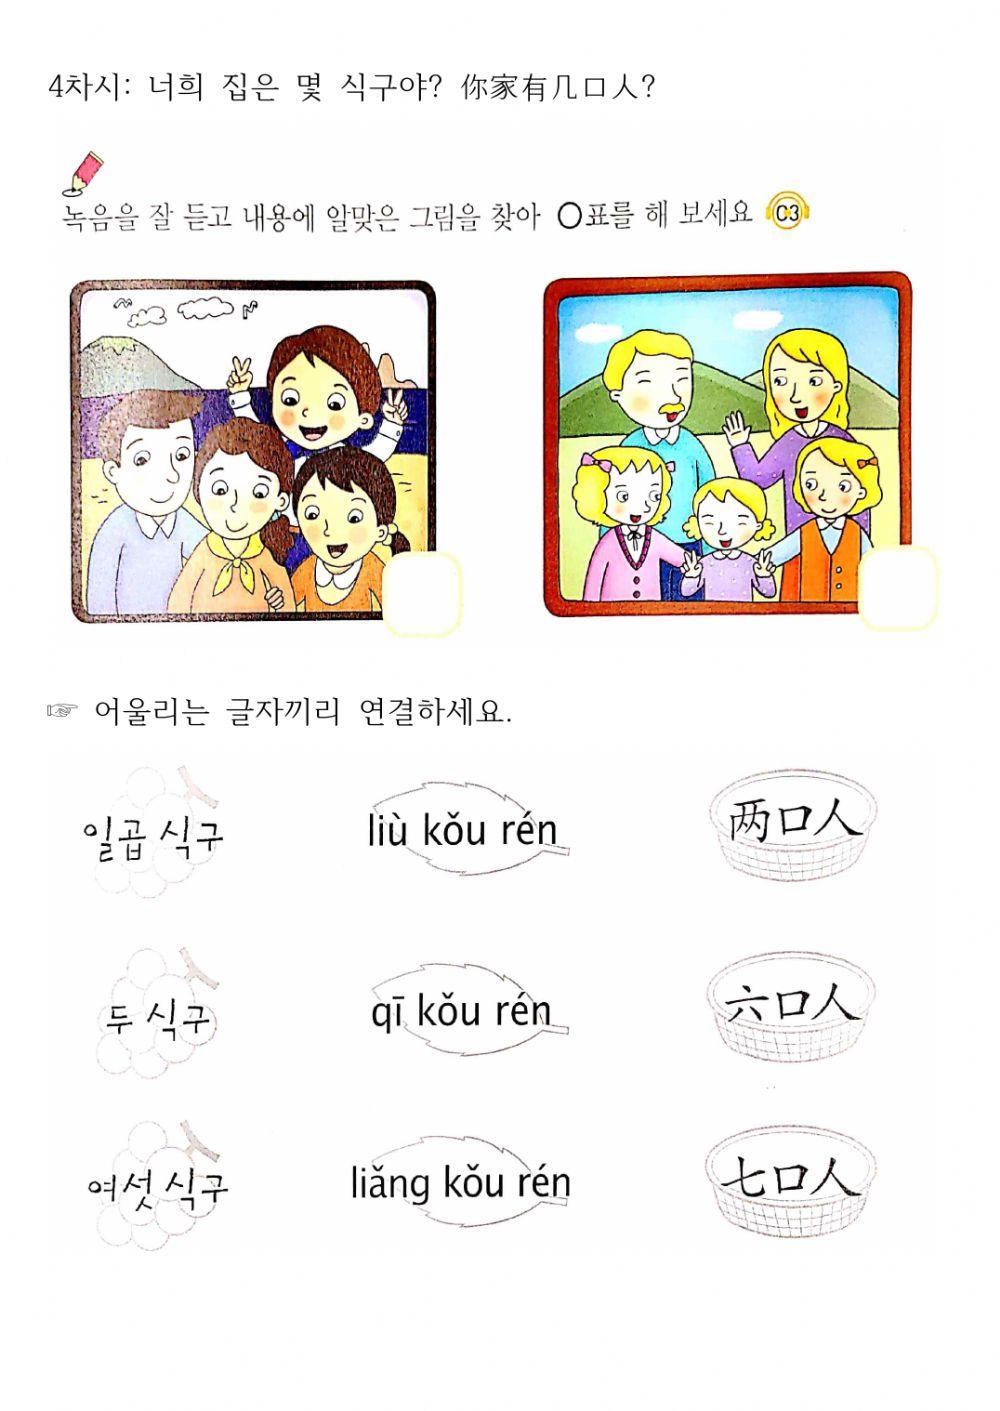 Jrc junir book2-2 (Korean-Chinese)